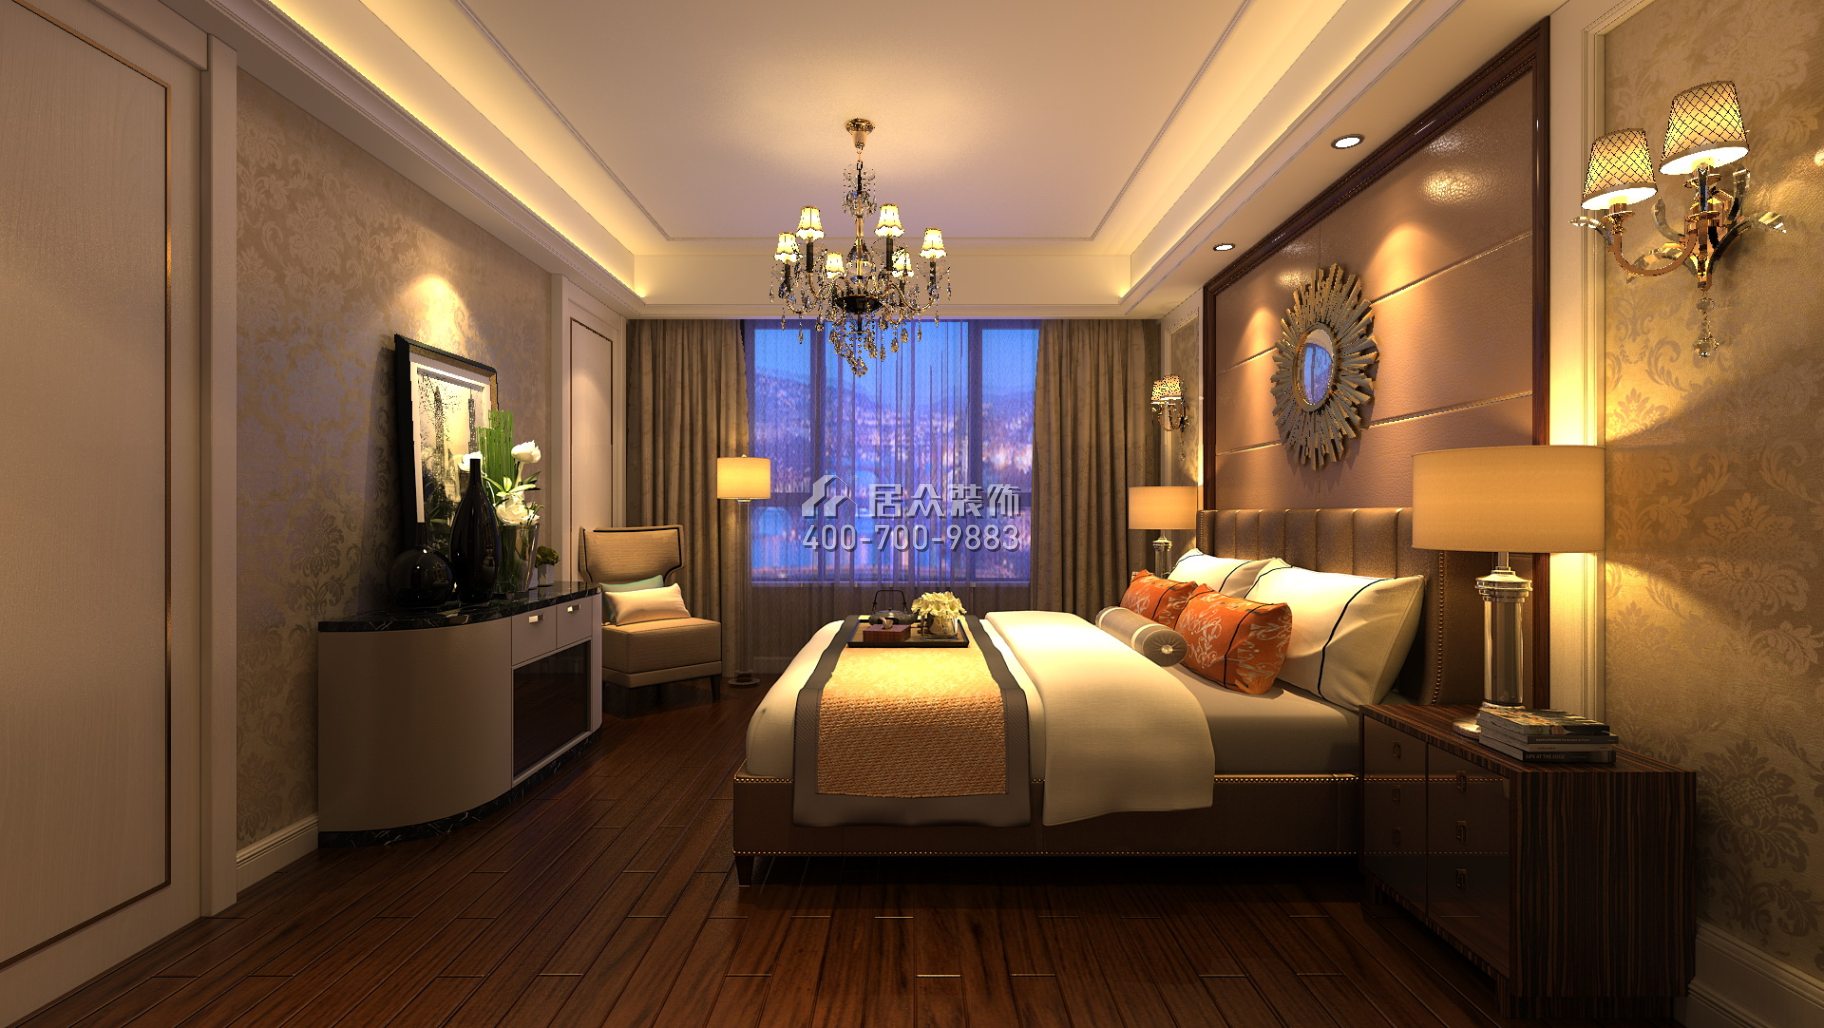 紫御華庭148平方米美式風格平層戶型臥室裝修效果圖